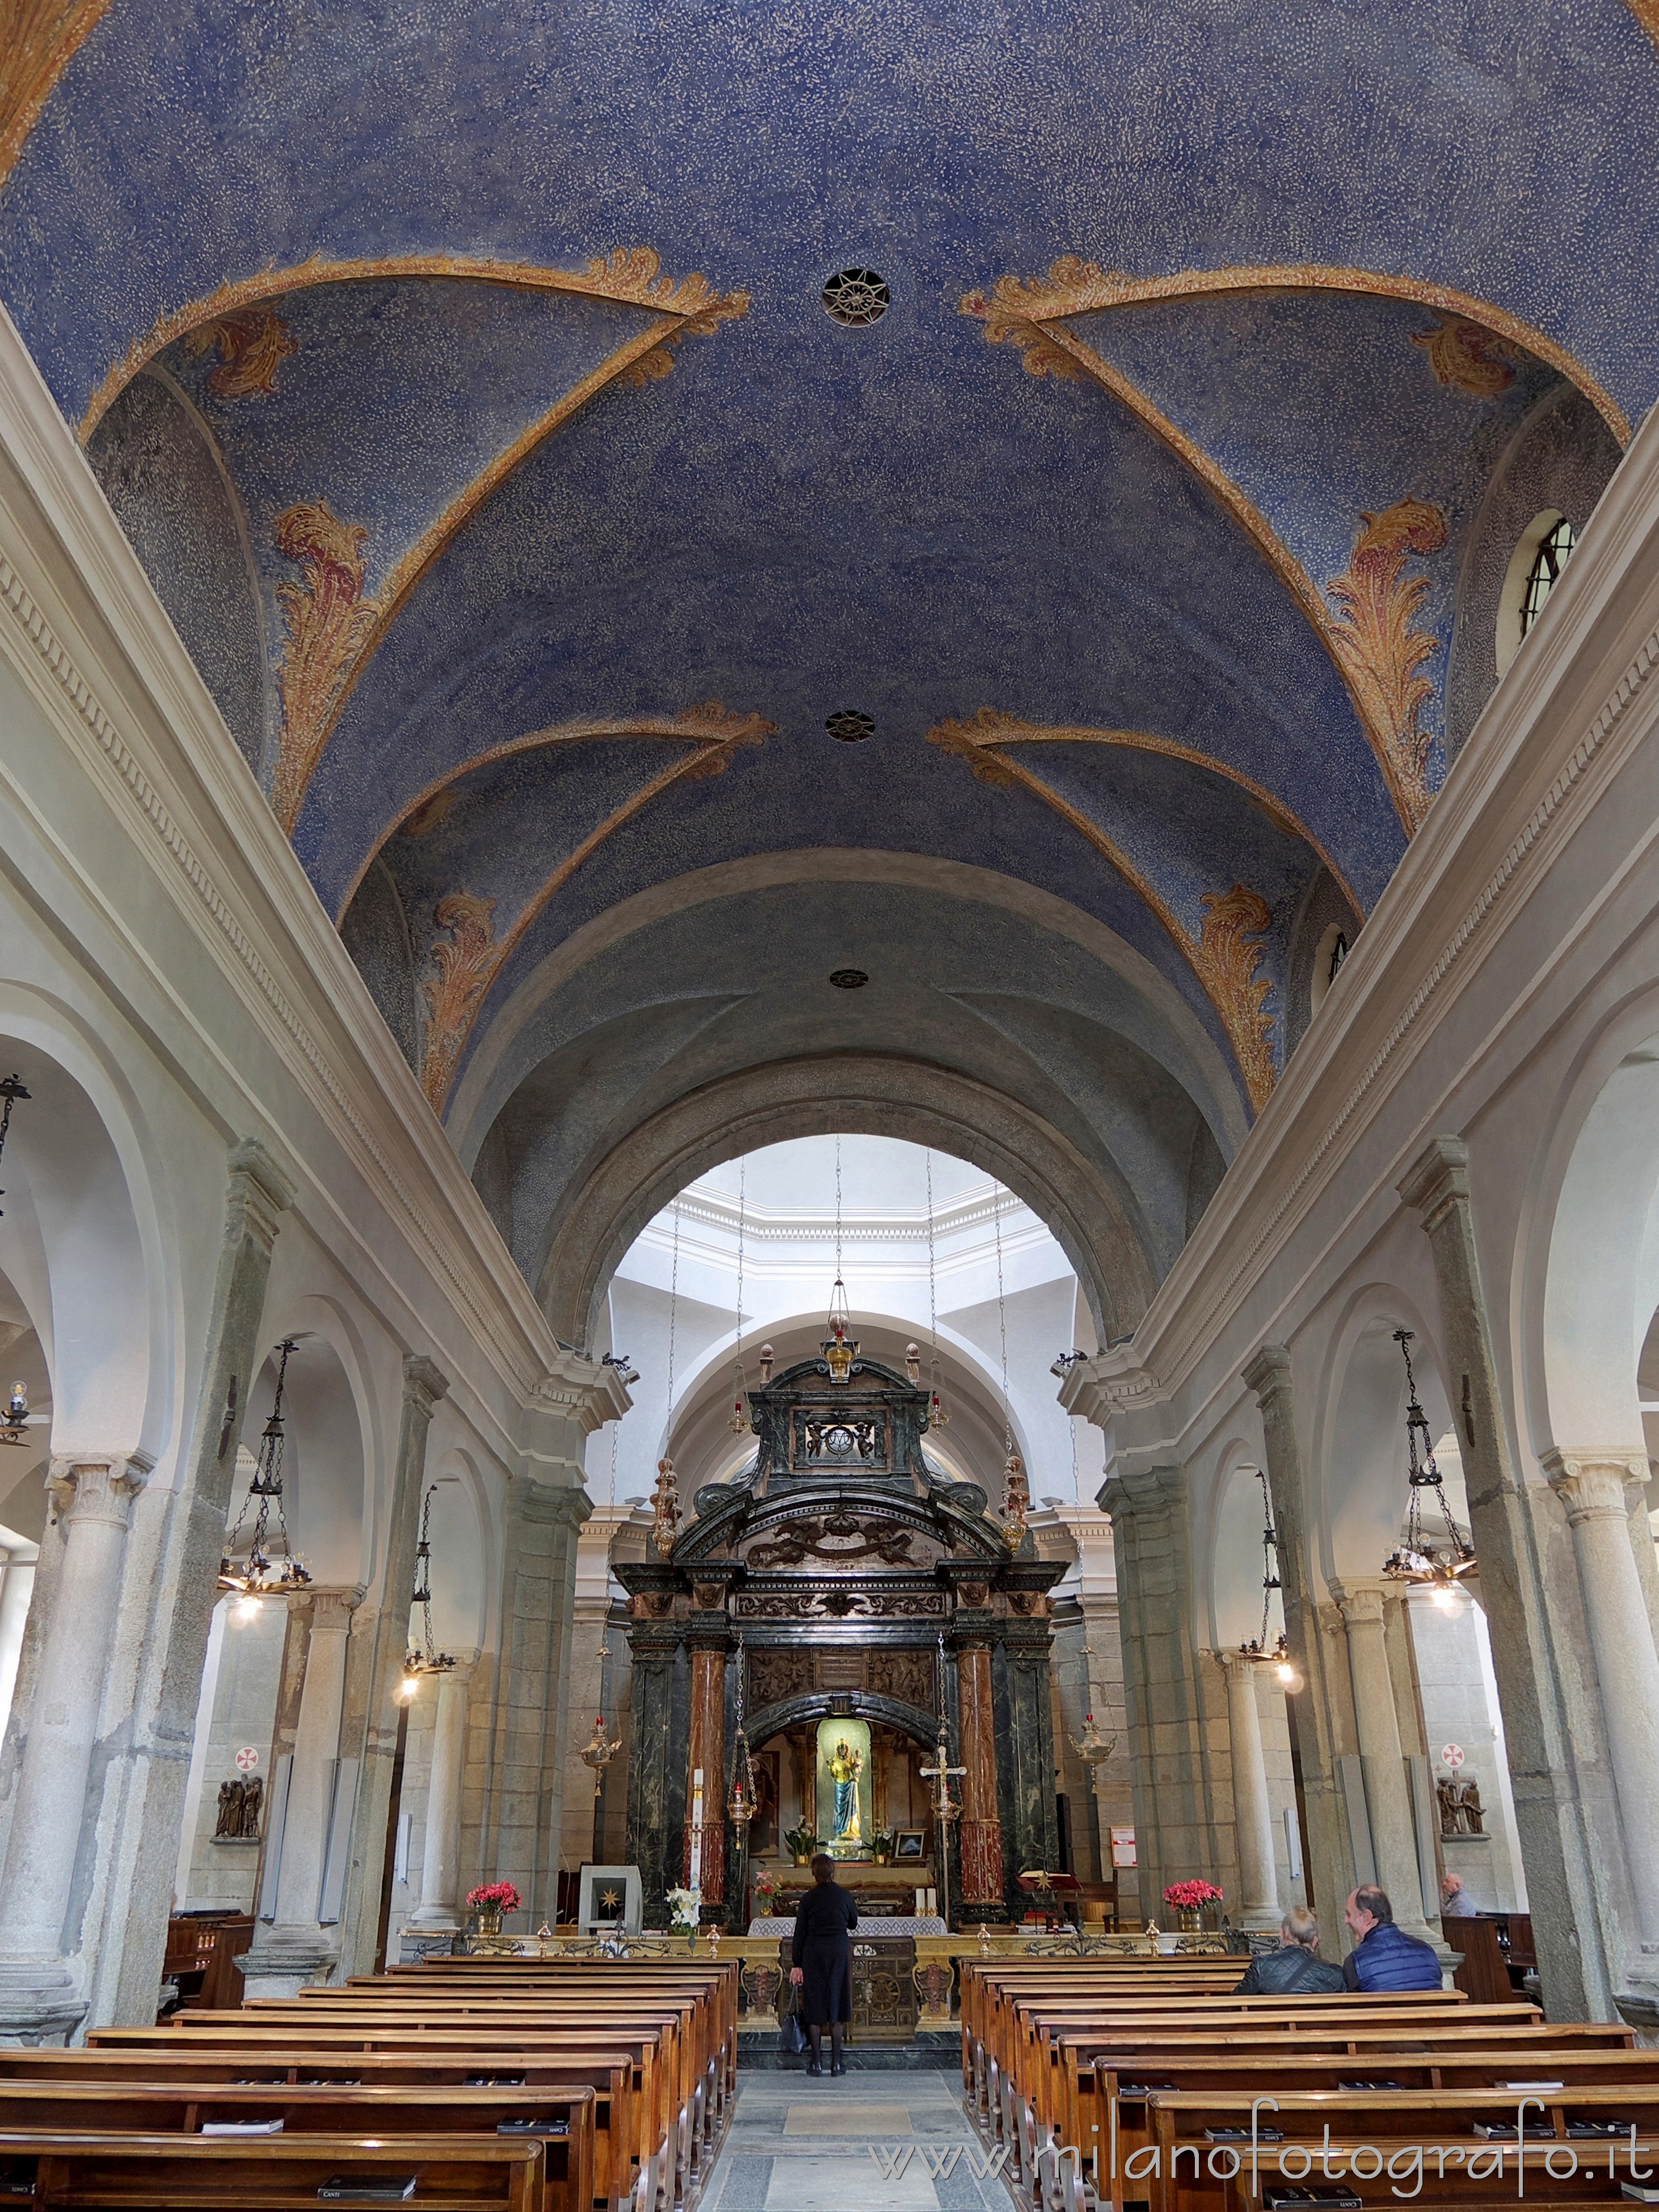 Biella, Italy: Interior of the Ancient Basilica of the Sanctuary of Oropa - Biella, Italy